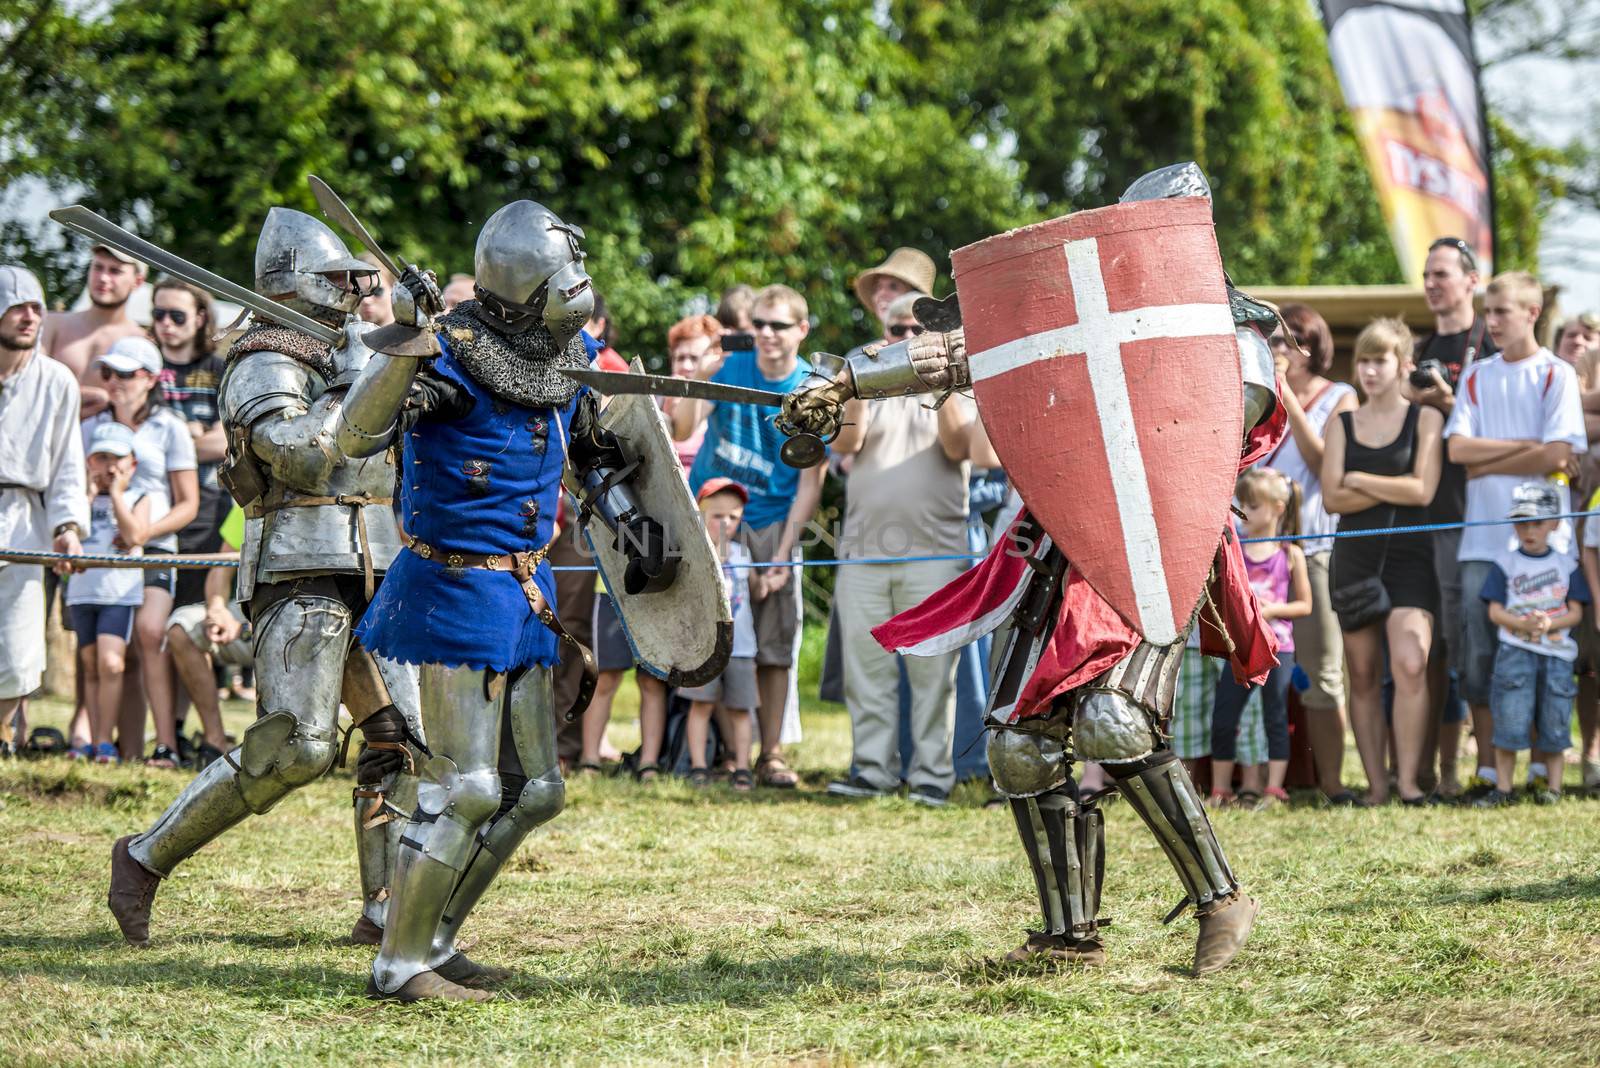 Medieval knights fighting by jarek78